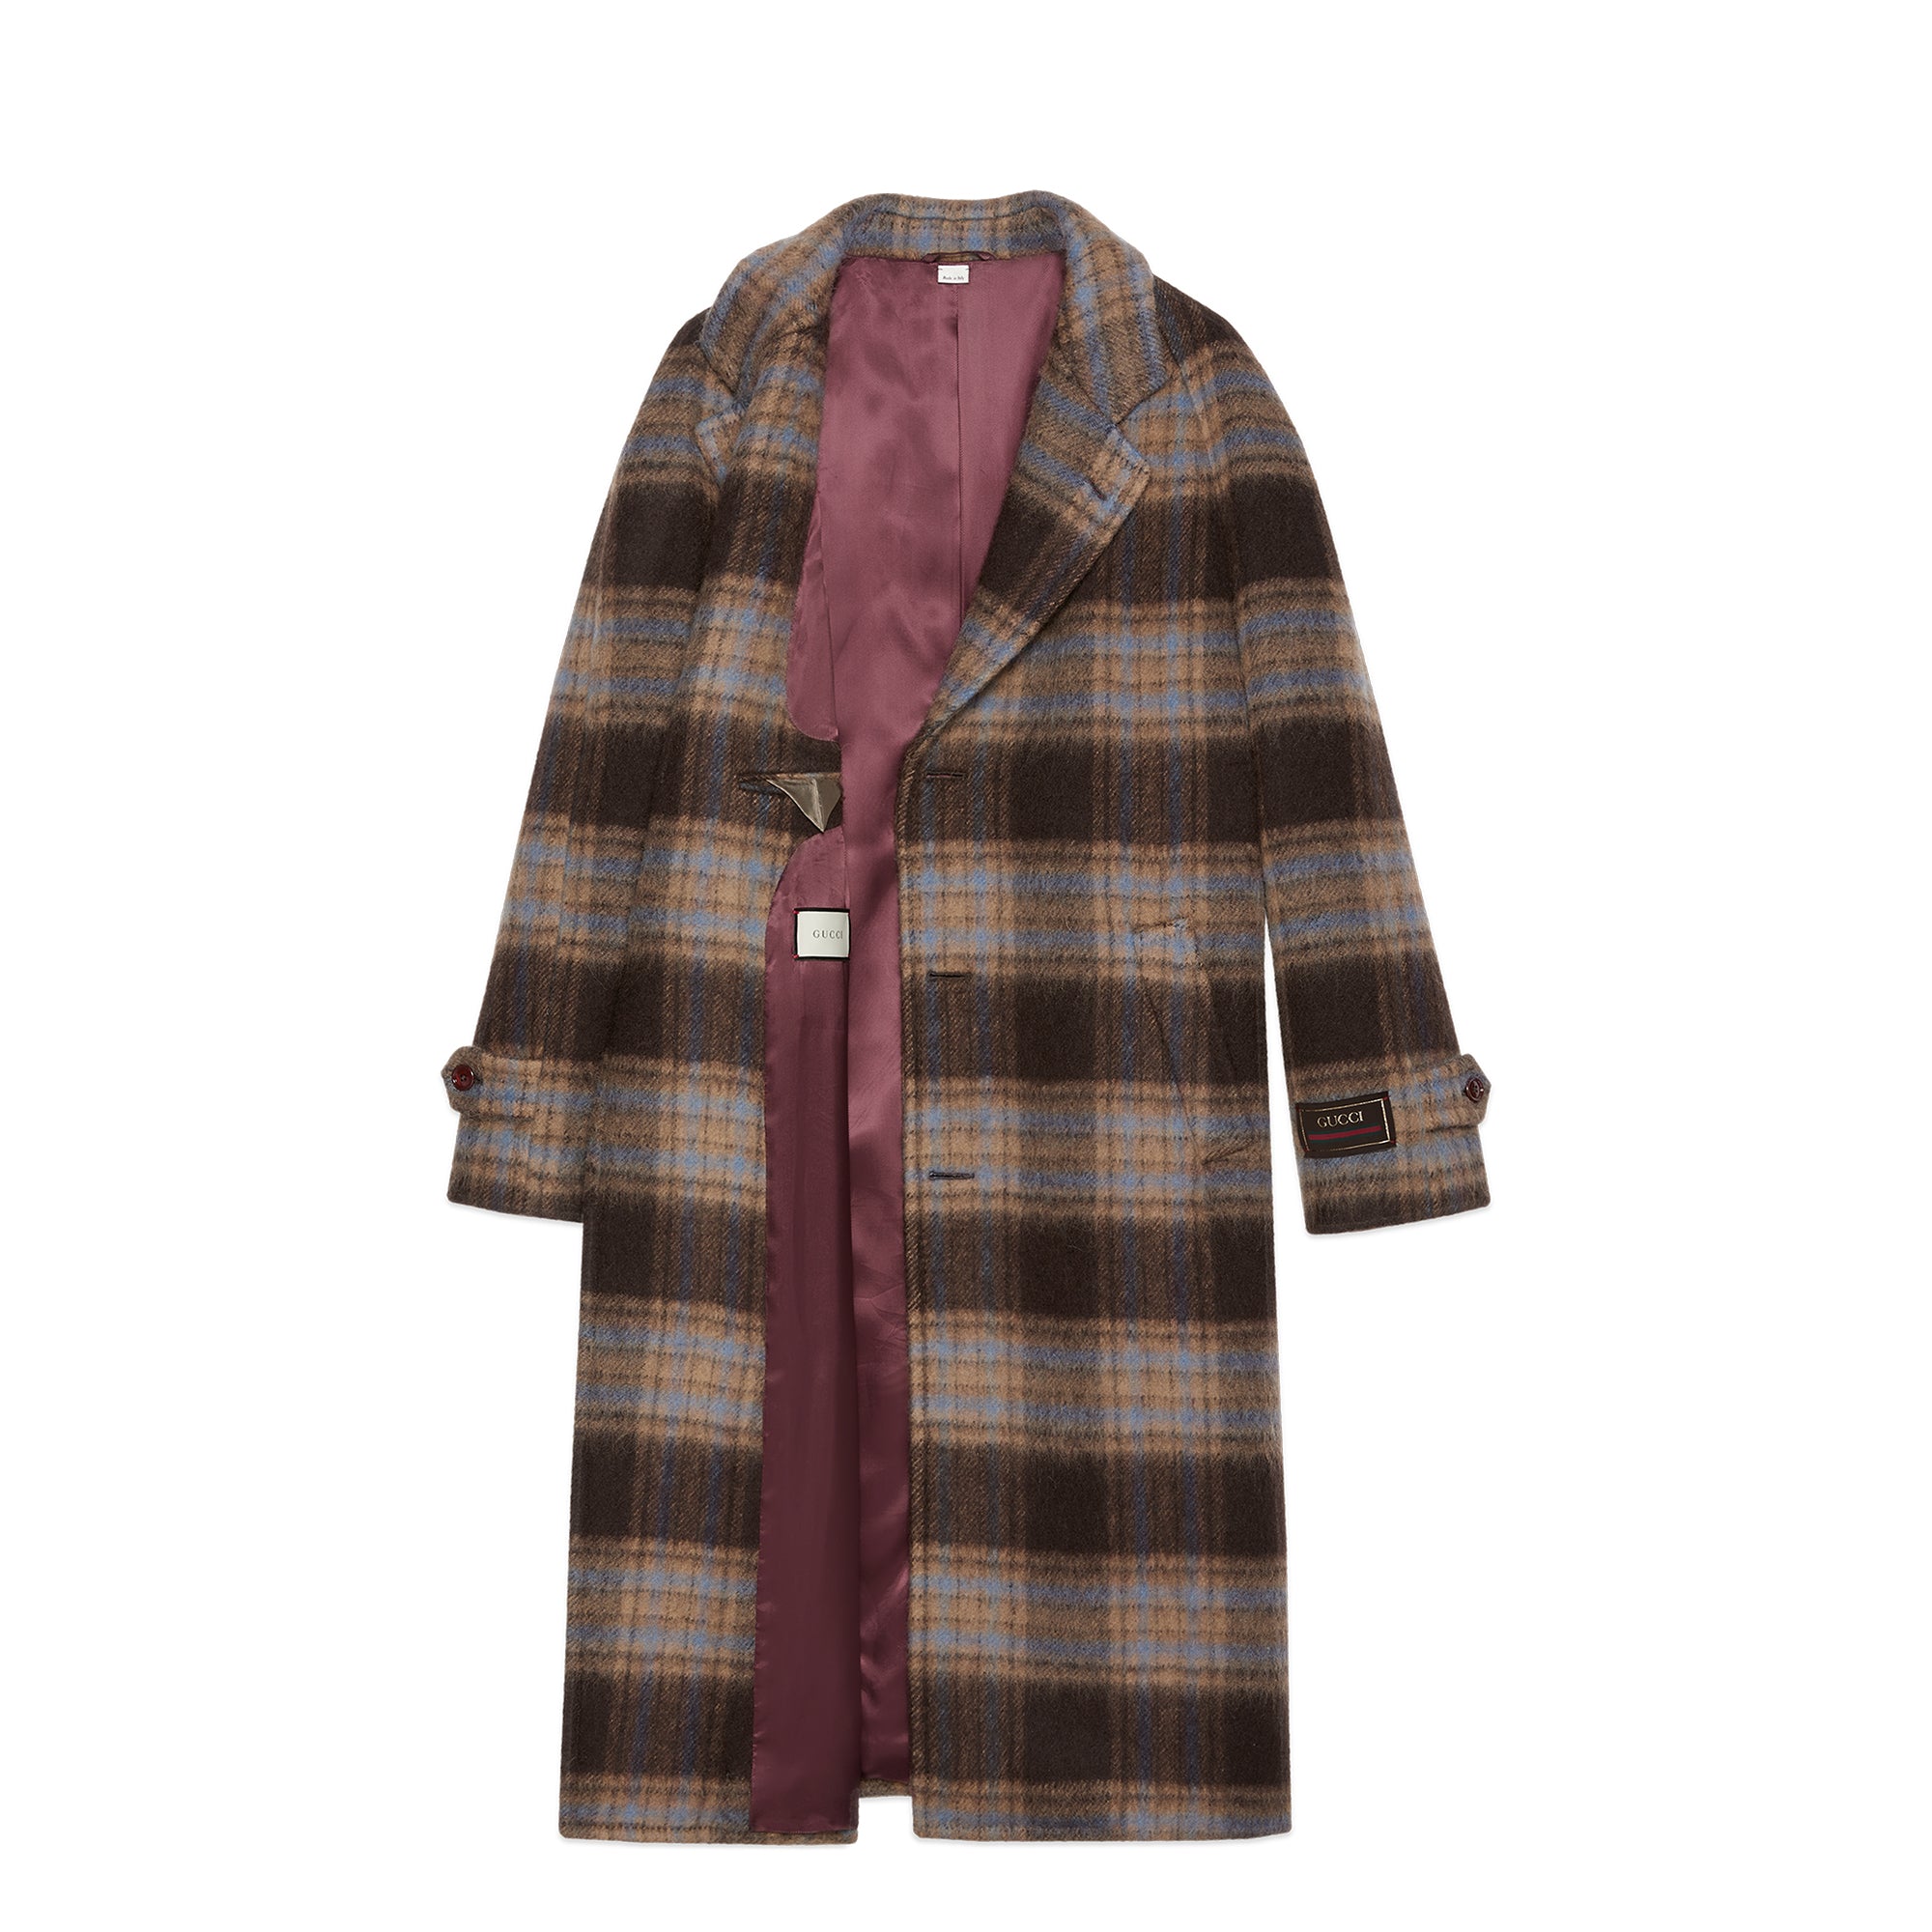 Gucci Lamb Fur Printed Fur Coat - Neutrals Coats, Clothing - GUC1371614